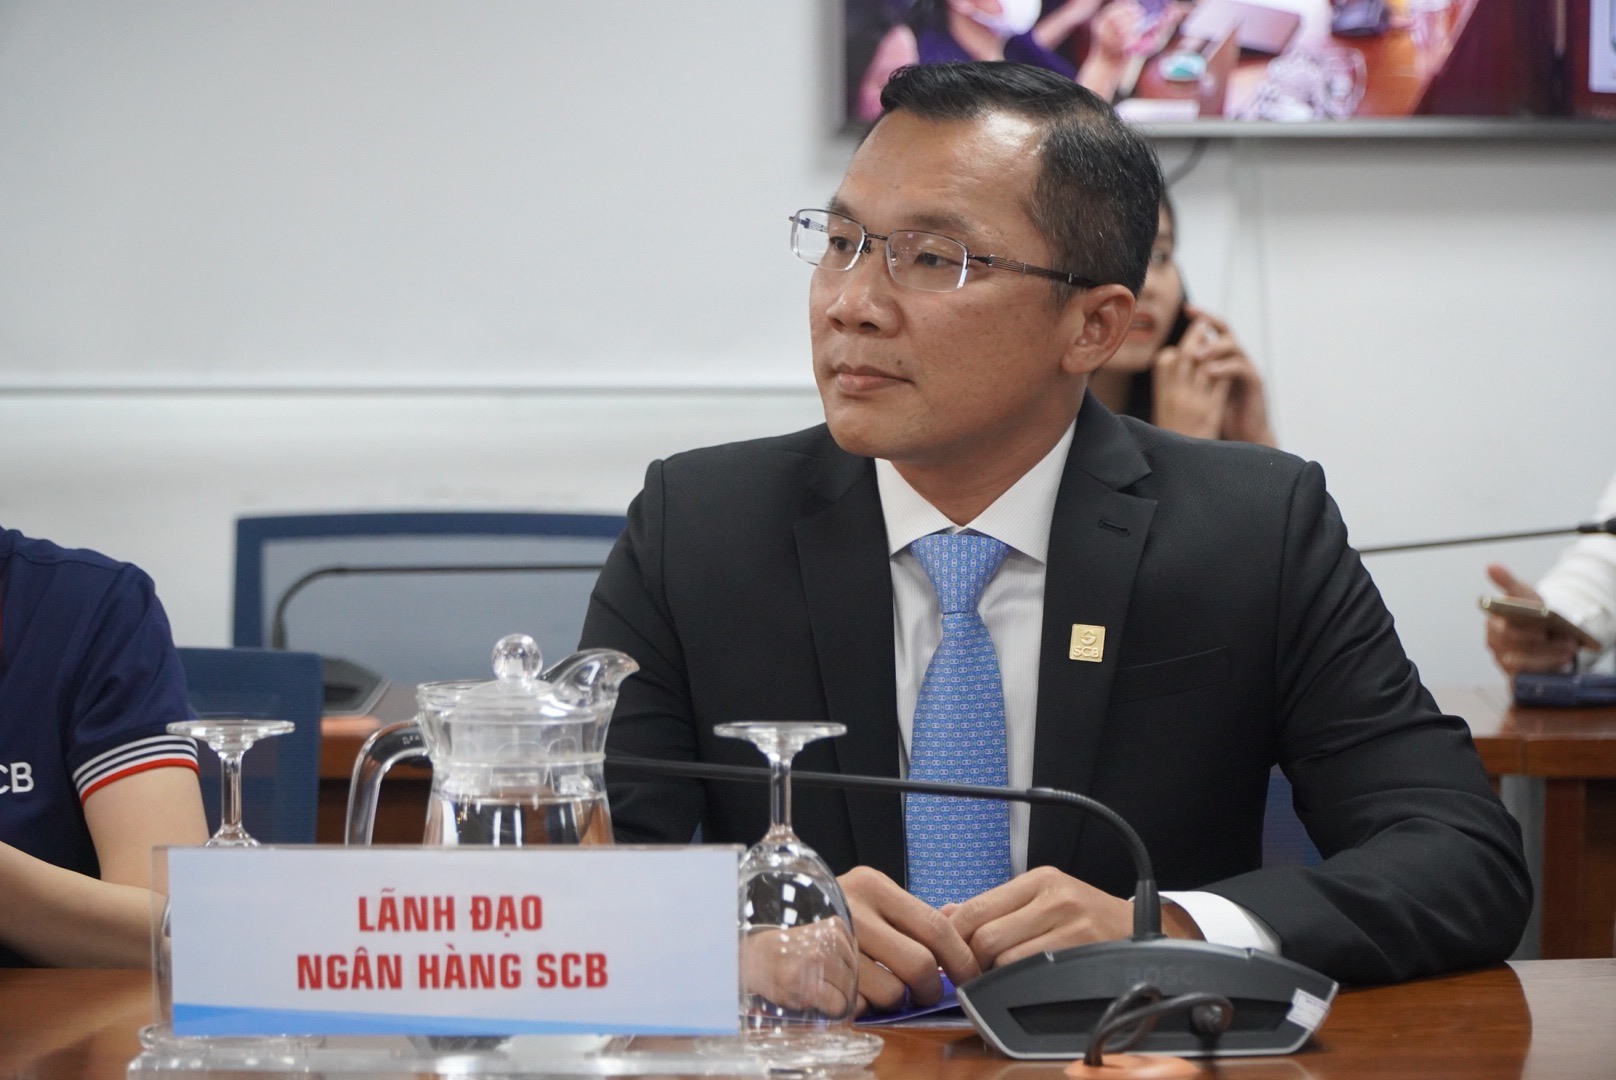 Ông Hoàng Minh Hoàn, Phó tổng giám đốc điều hành Ngân hàng SCB